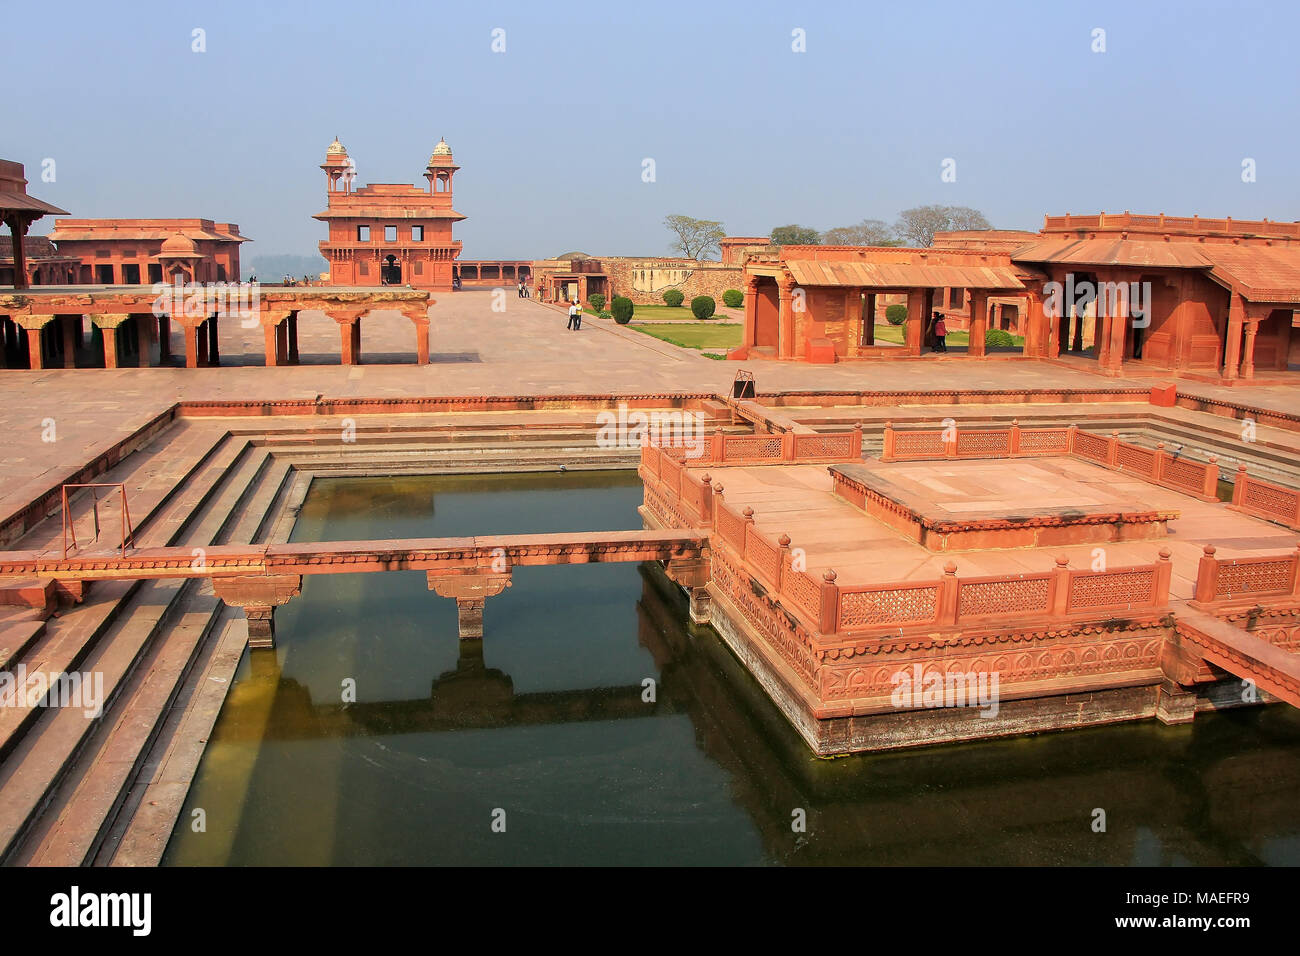 Zierpflanzen Pool in Fatehpur Sikri Komplex, Uttar Pradesh, Indien. Fatehpur Sikri ist einer der am besten erhaltenen Beispiele der Mughal Architektur in Indien Stockfoto